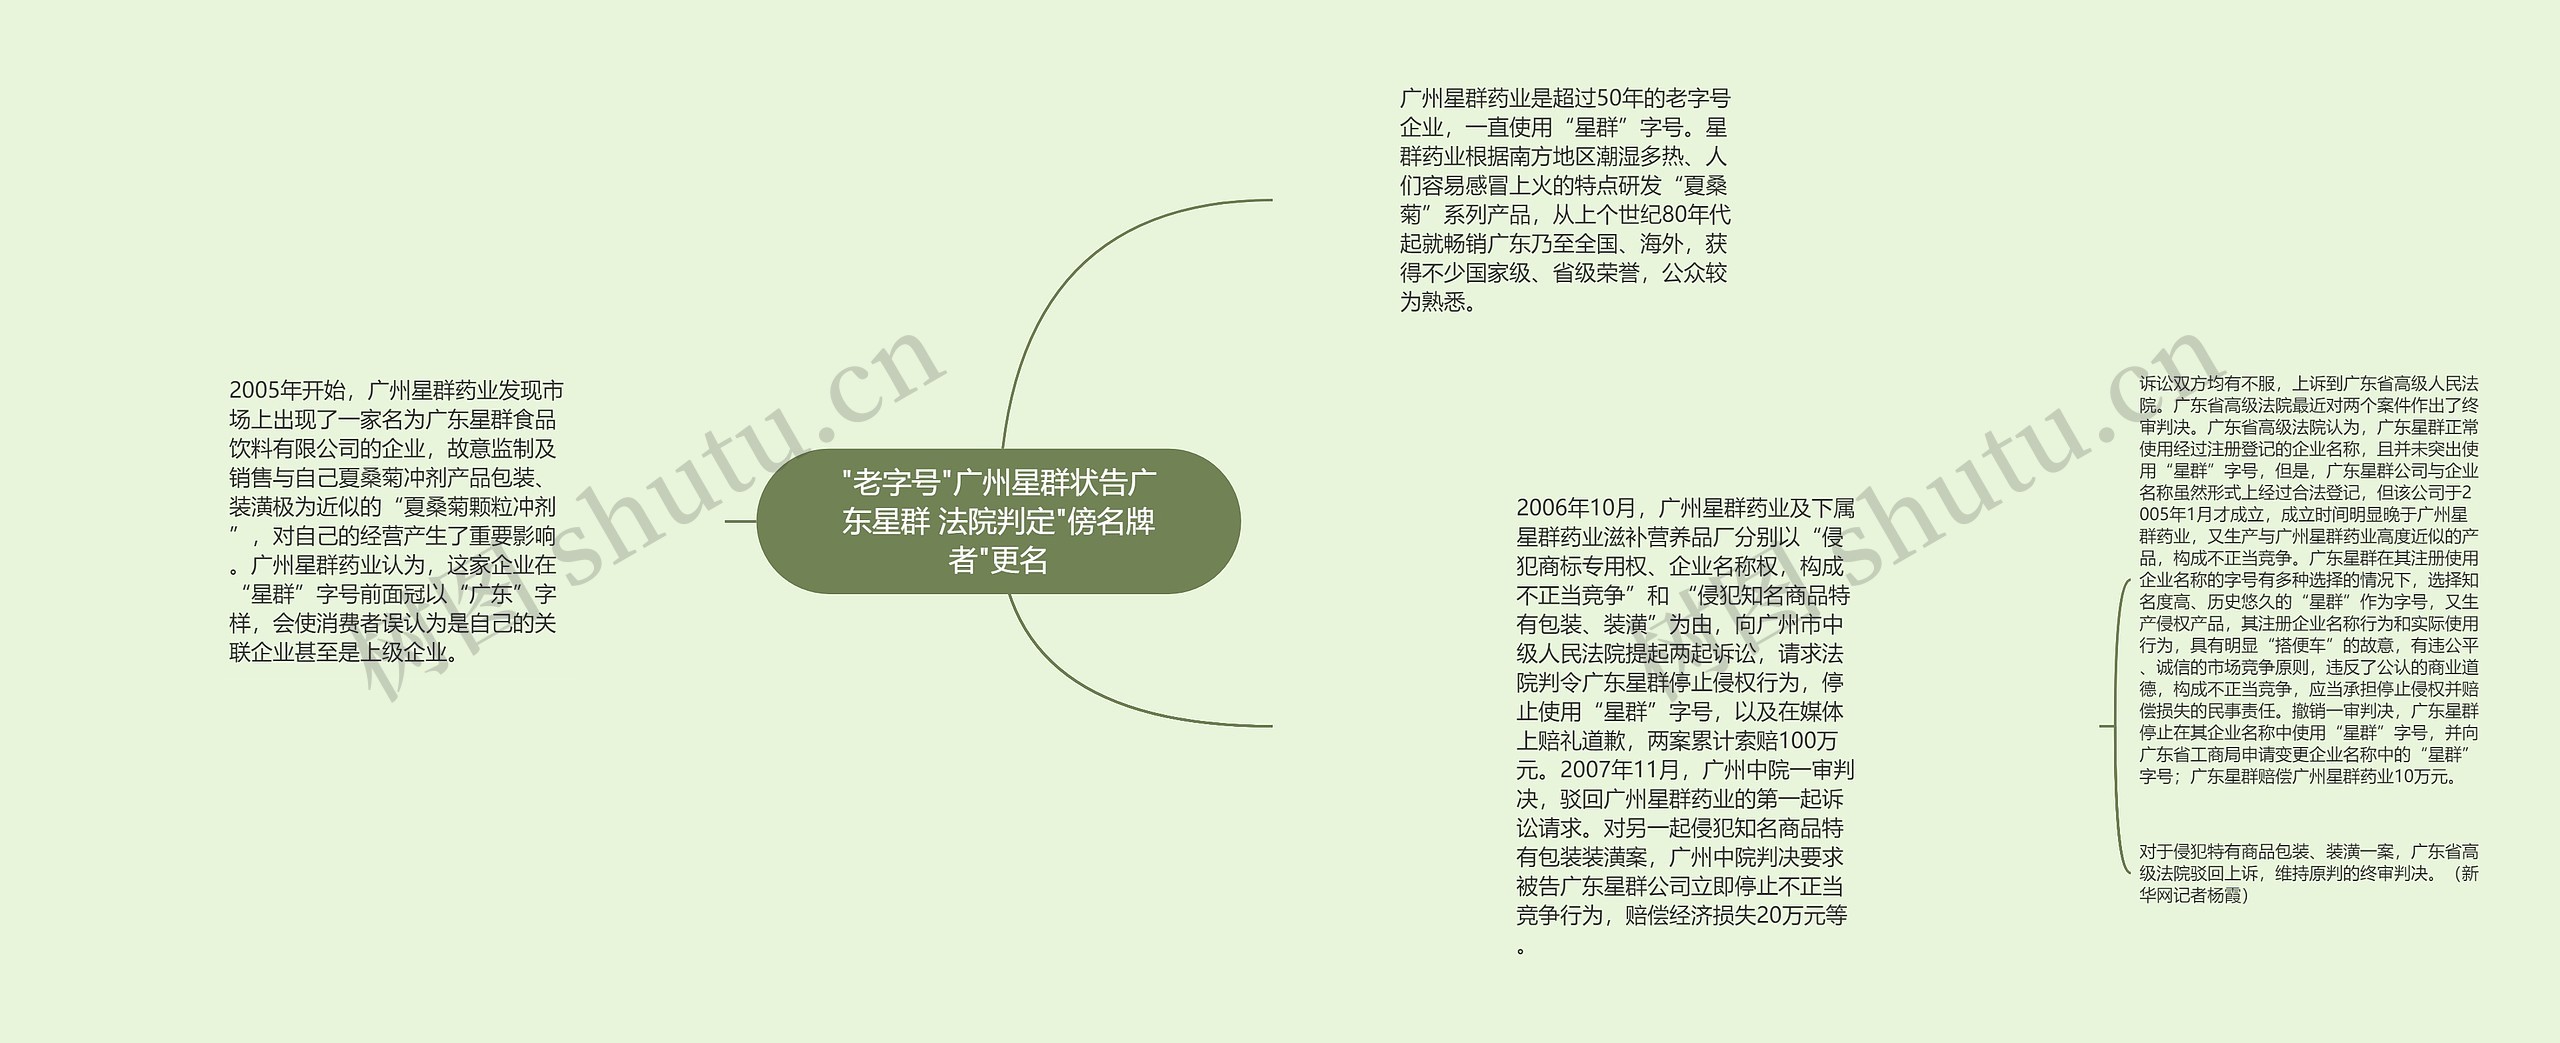 "老字号"广州星群状告广东星群 法院判定"傍名牌者"更名思维导图